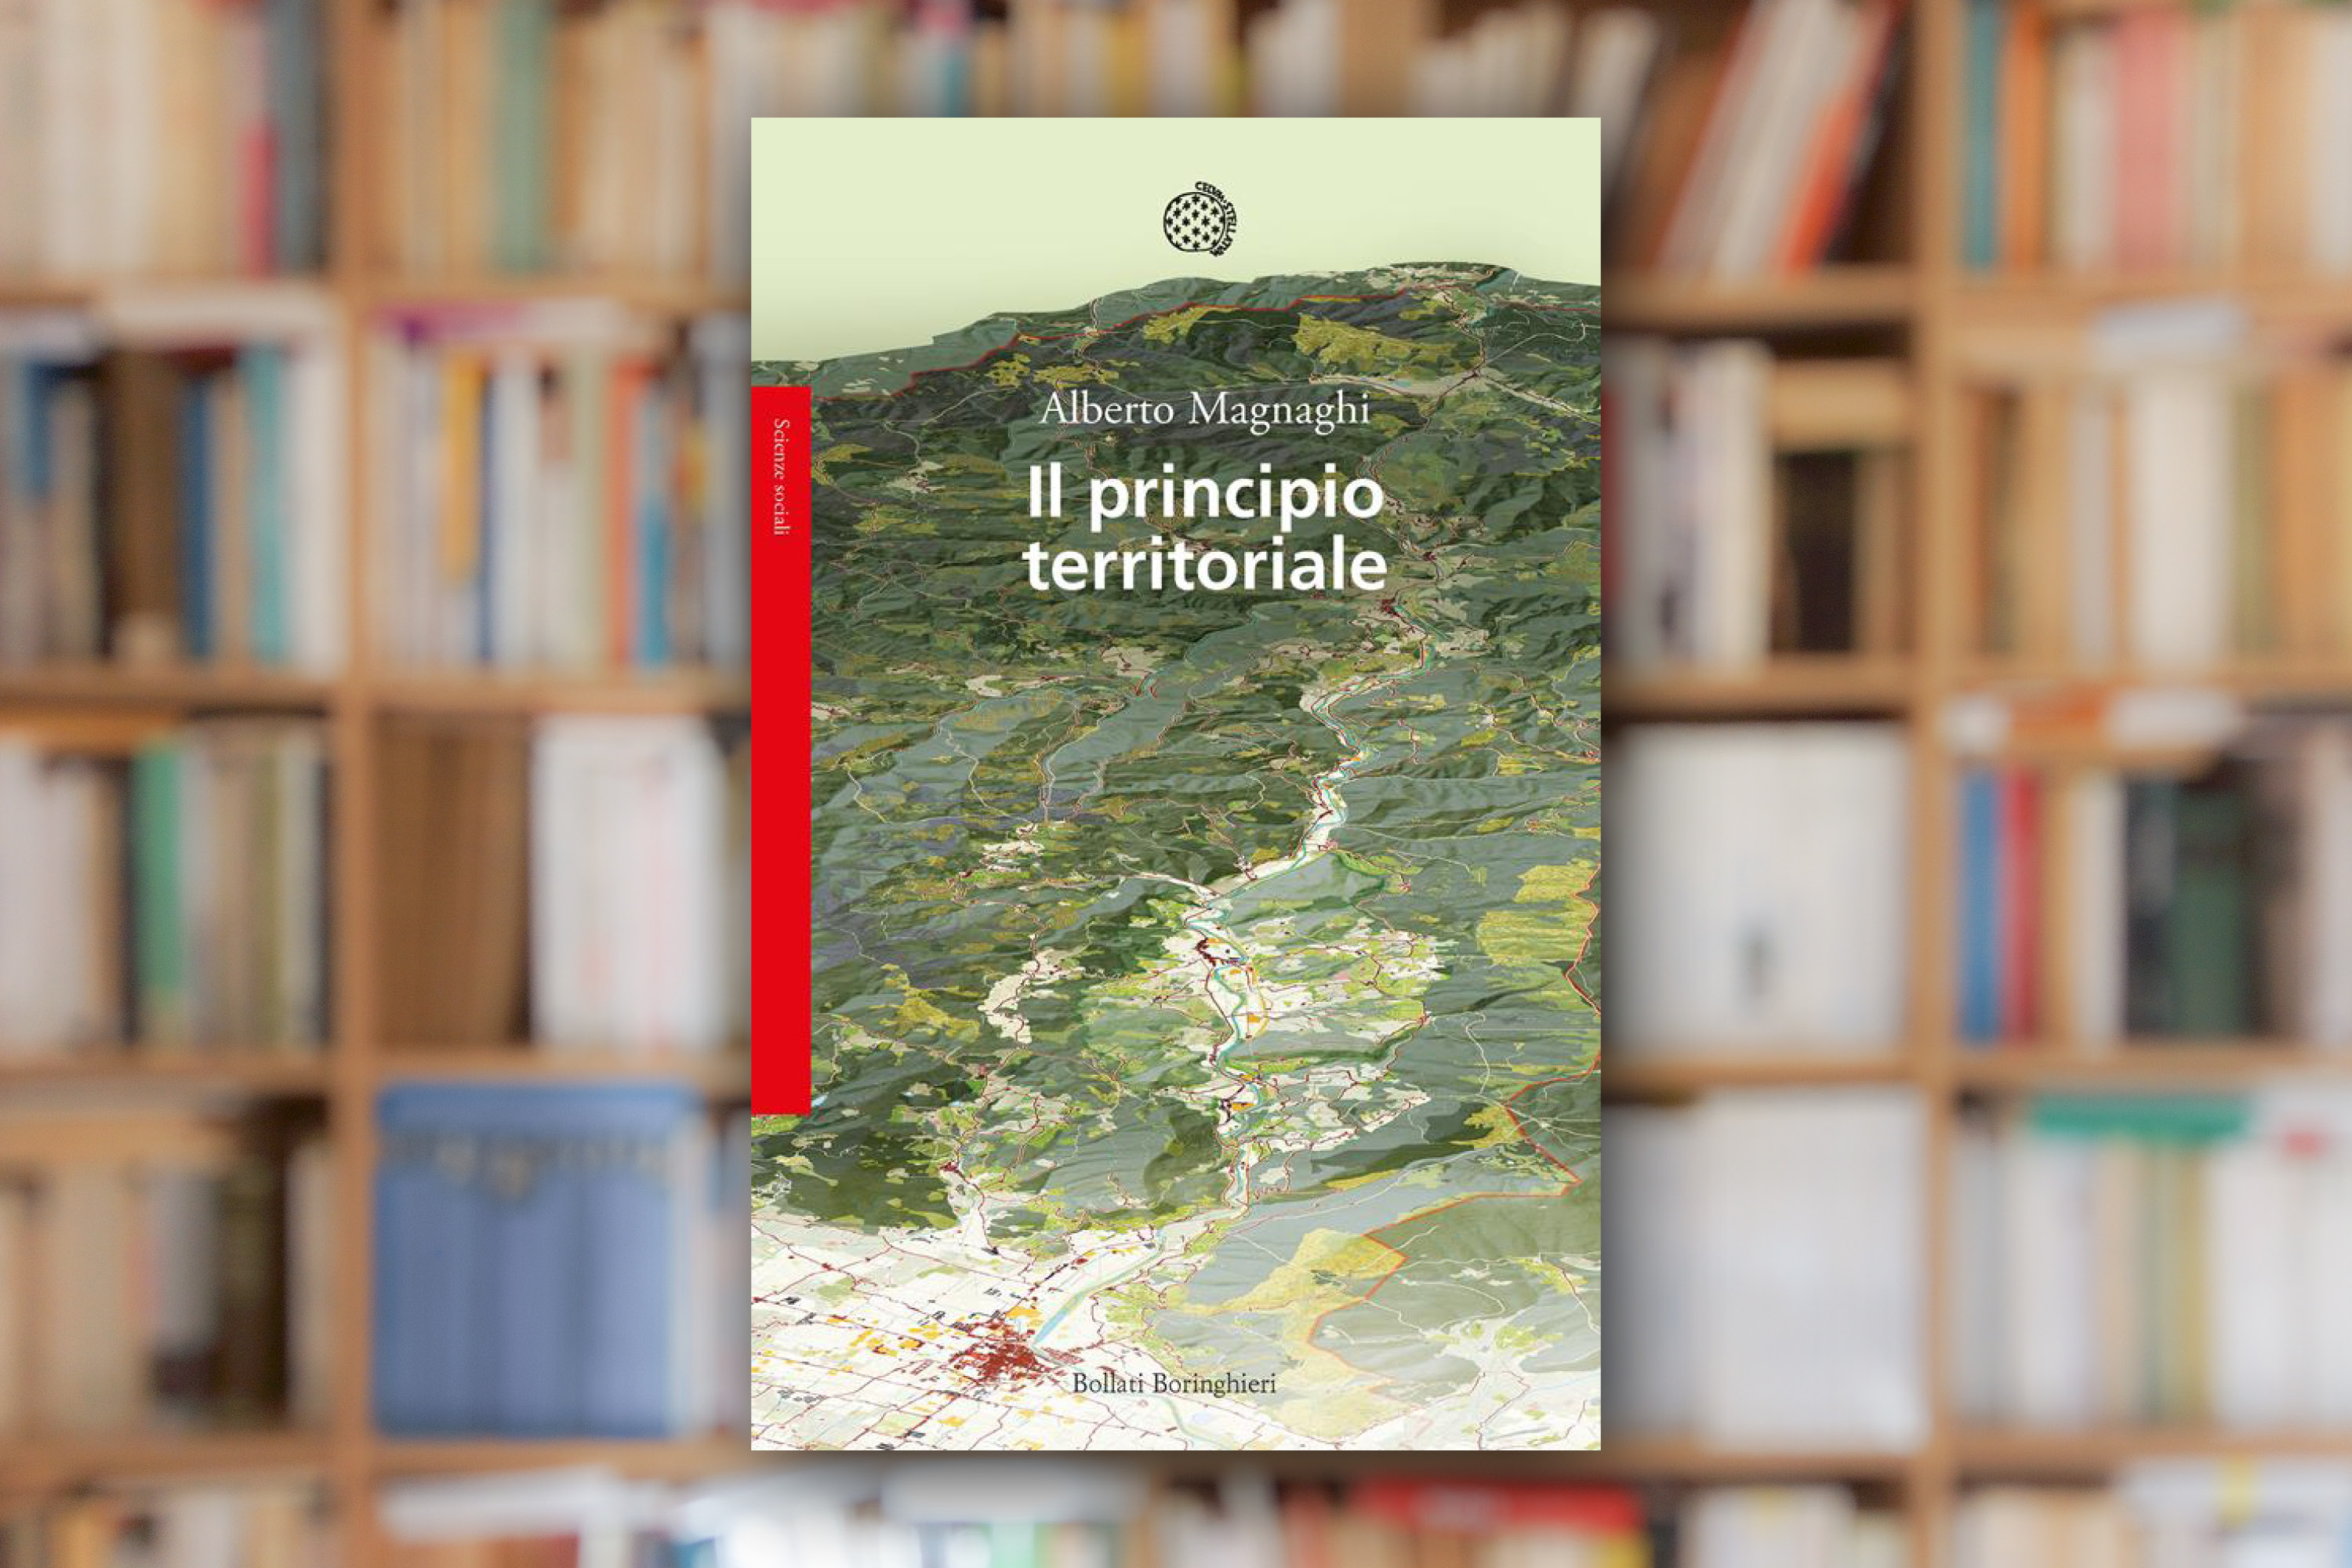 « Il principio territoriale » d’Alberto Magnaghi